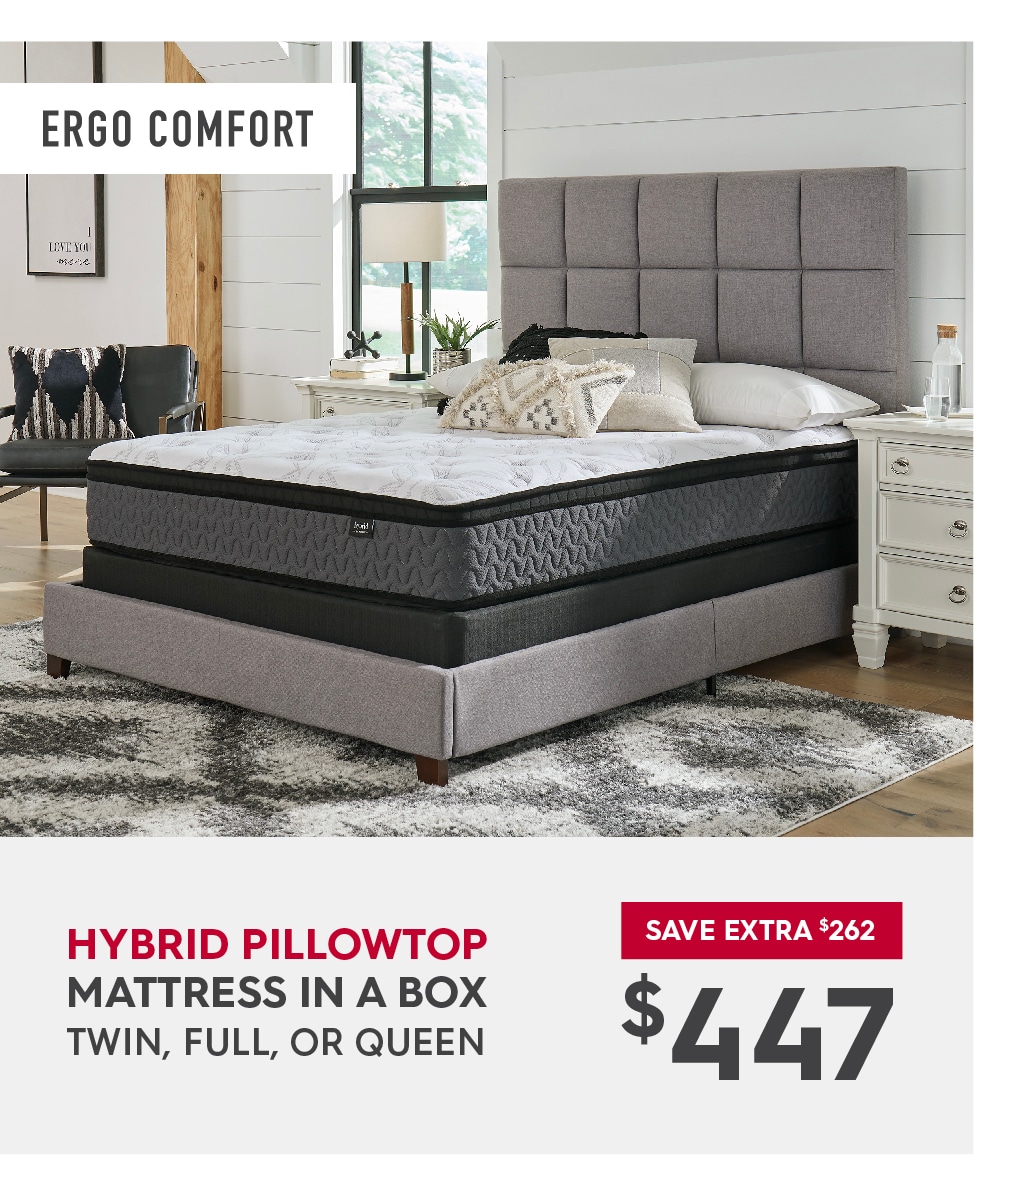 Shop Ergo Comfort Hybrid Pillowtop mattress deals.